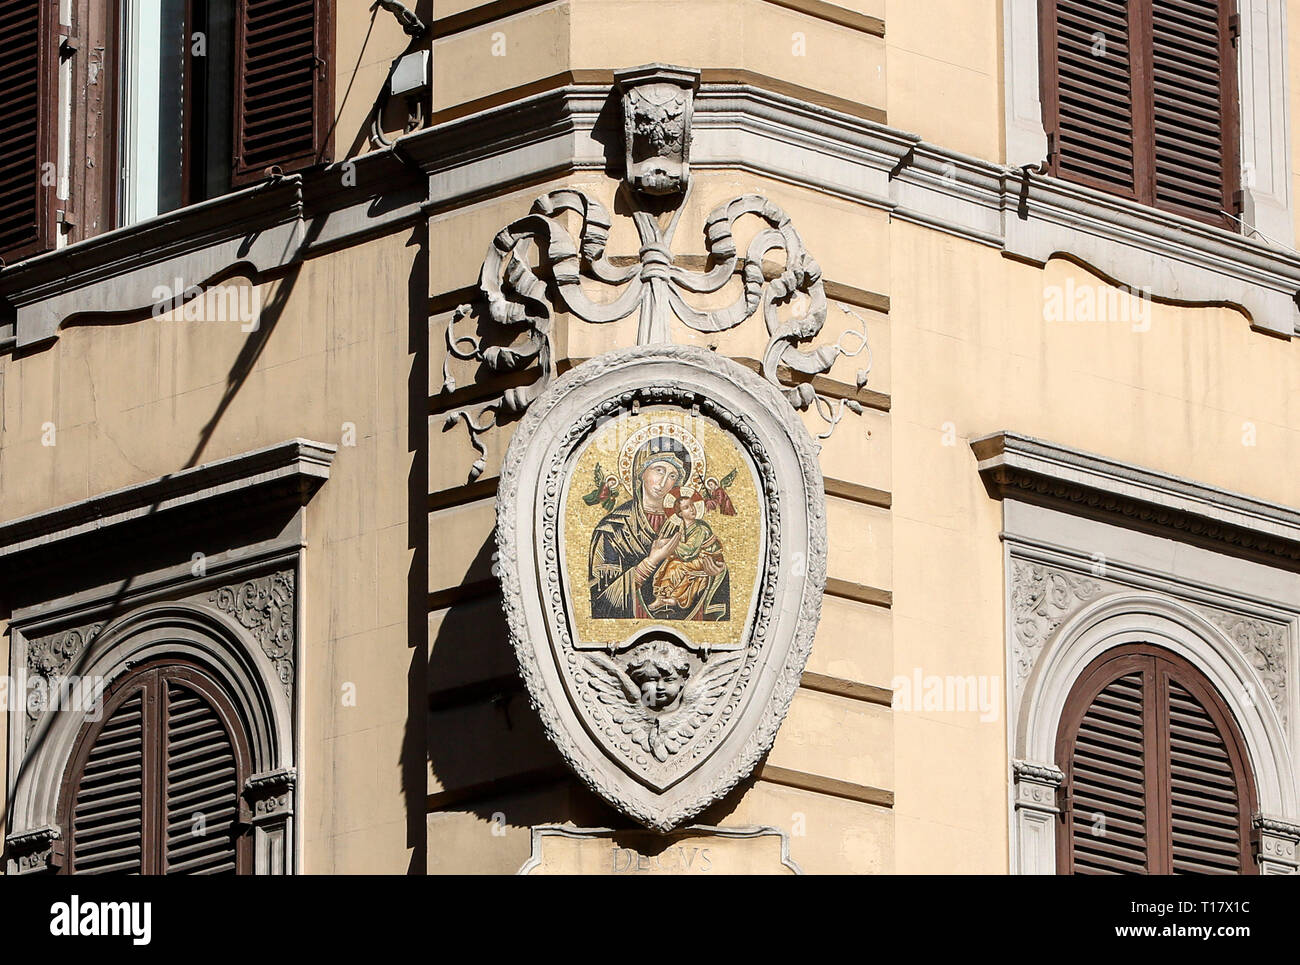 Un édicule votif représentant la Vierge Marie et l'Enfant Jésus sur un bâtiment de l'Esquilino rione à Rome, Italie. Banque D'Images